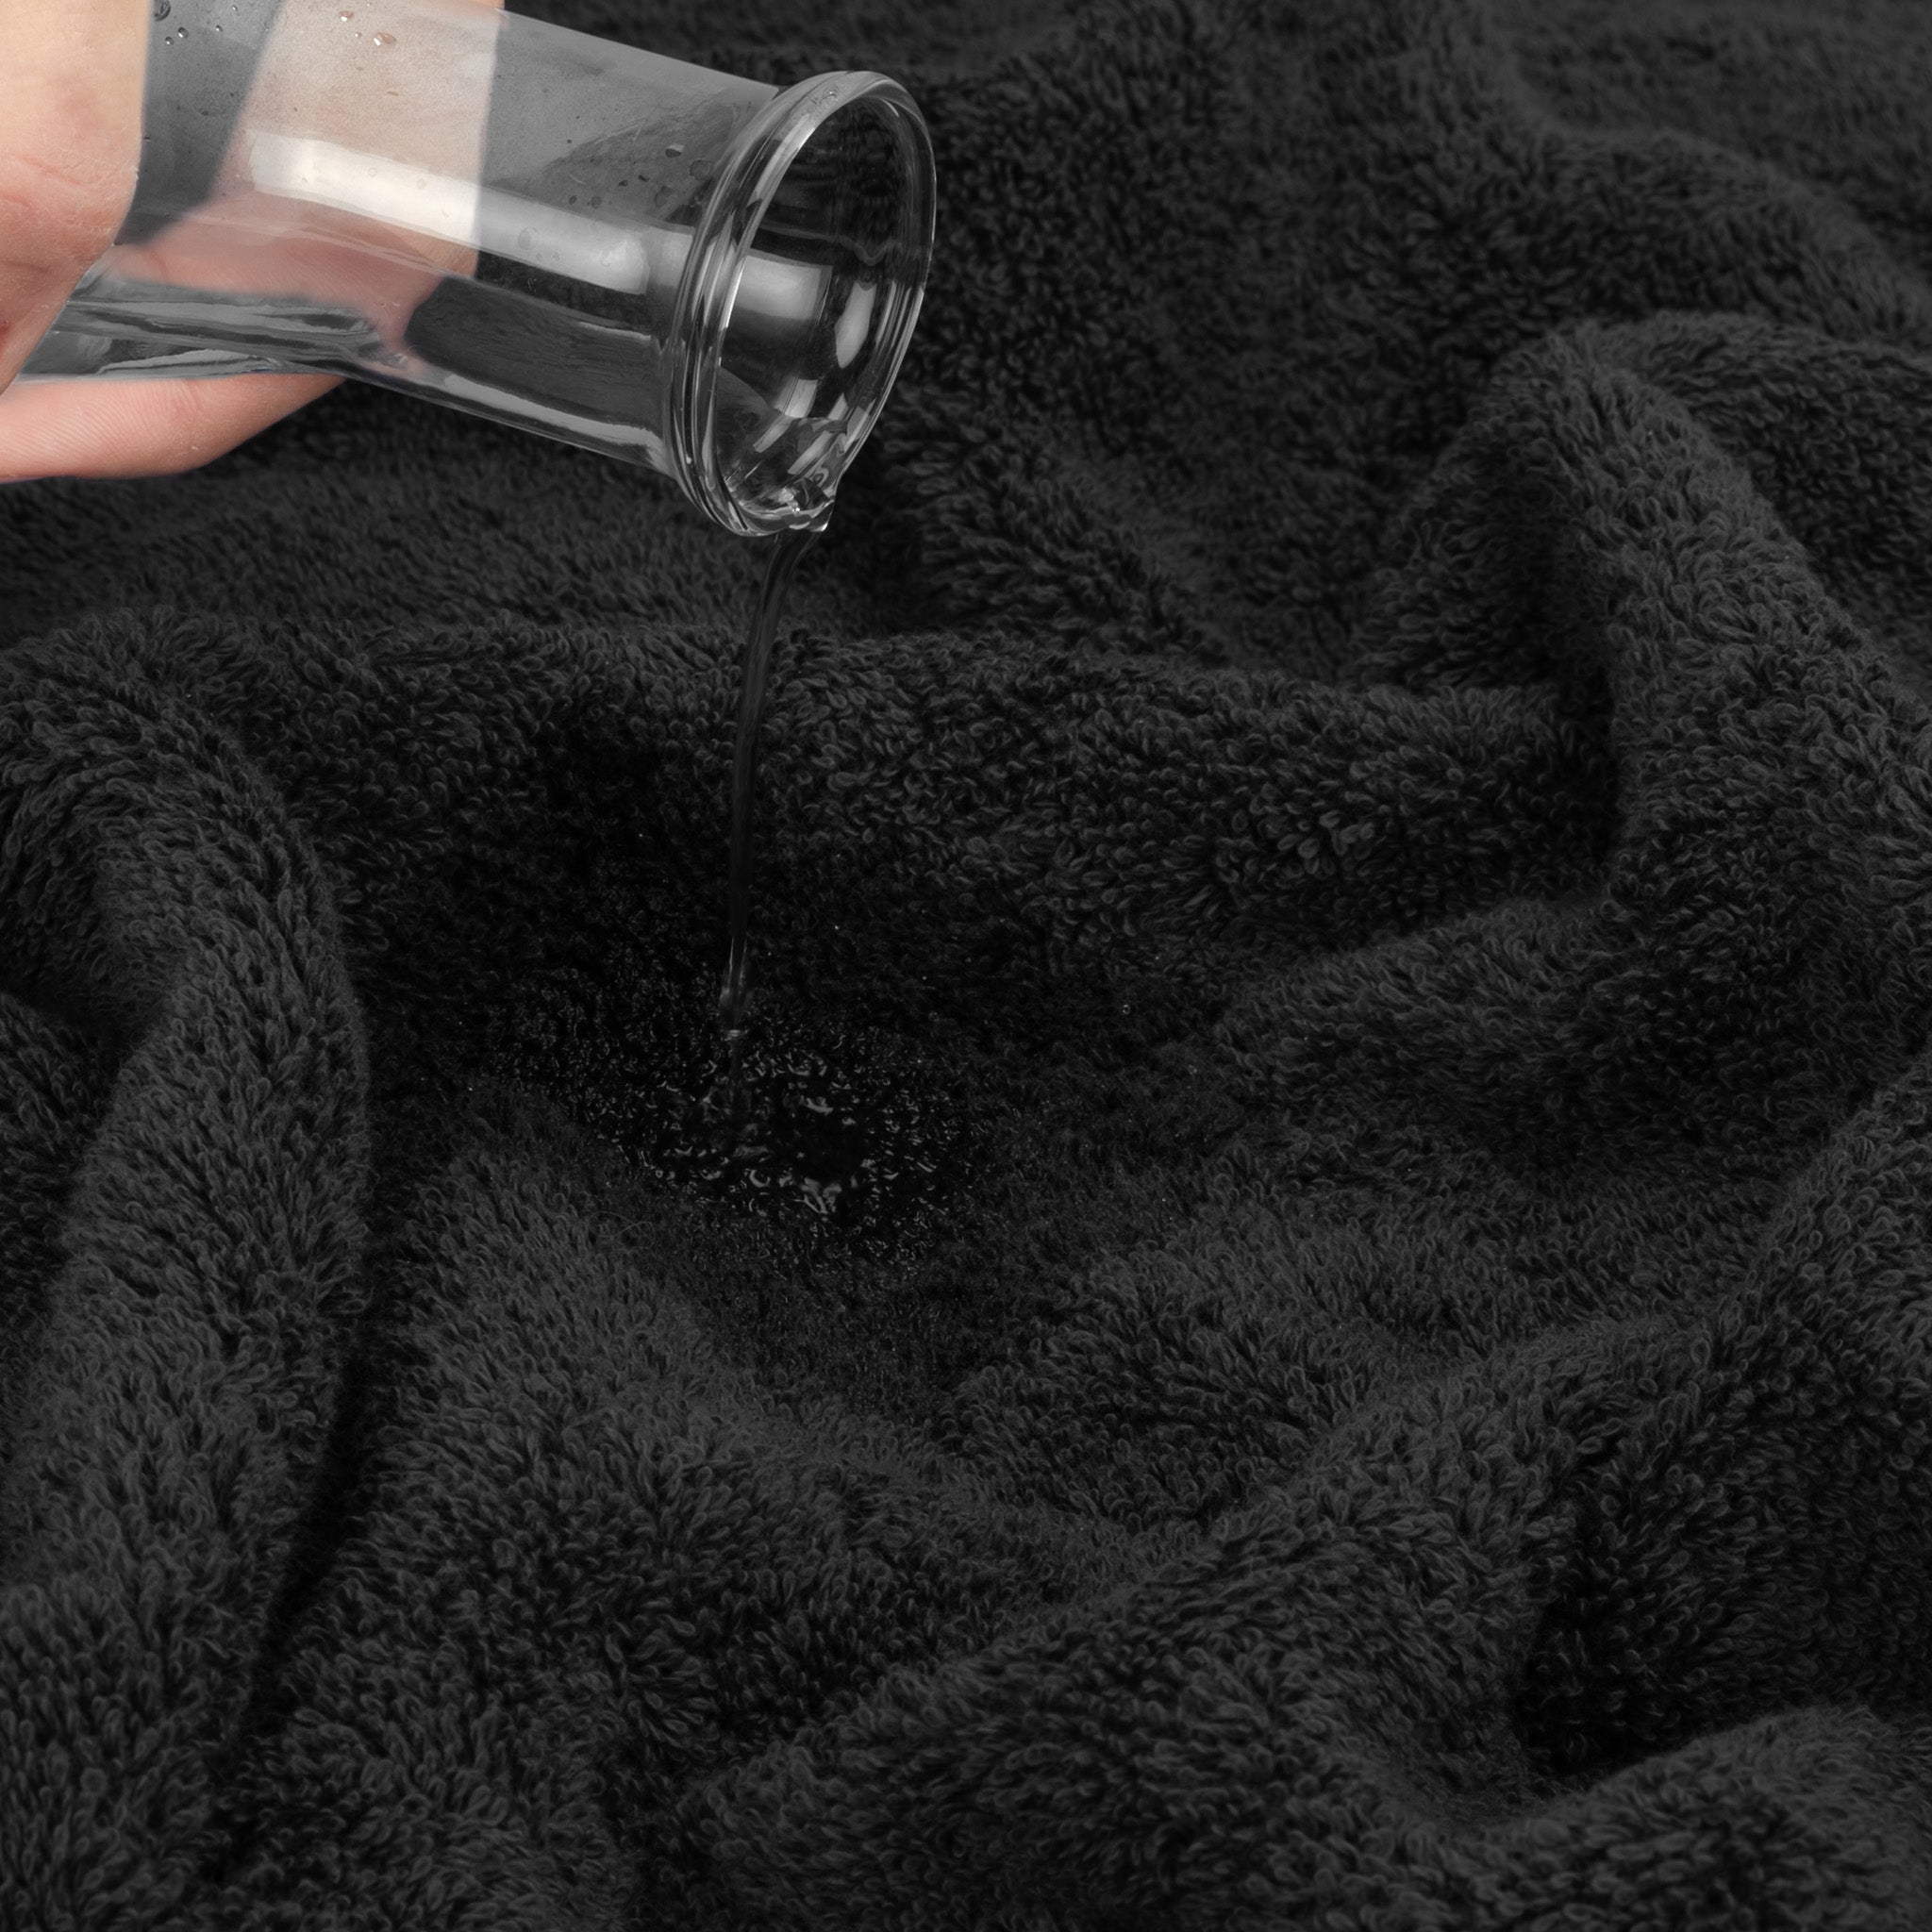 American Soft Linen Bekos 100% Cotton Turkish Towels 6 Piece Bath Towel Set -black-06